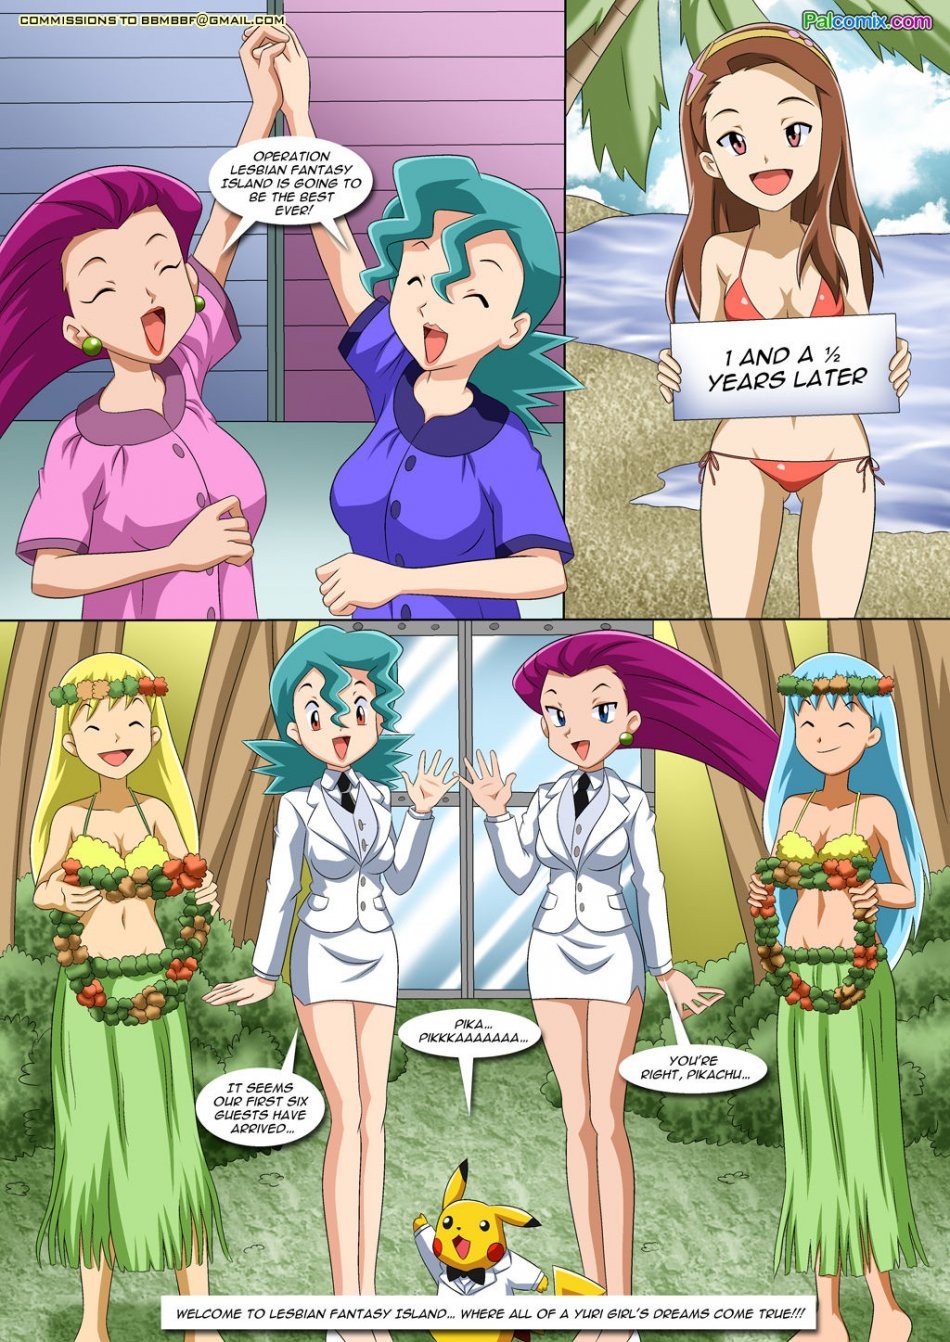 Anime Lesbian Pokemon Porn Comics - Lesbian Fantasy Island Porn comic, Rule 34 comic, Cartoon porn comic -  GOLDENCOMICS